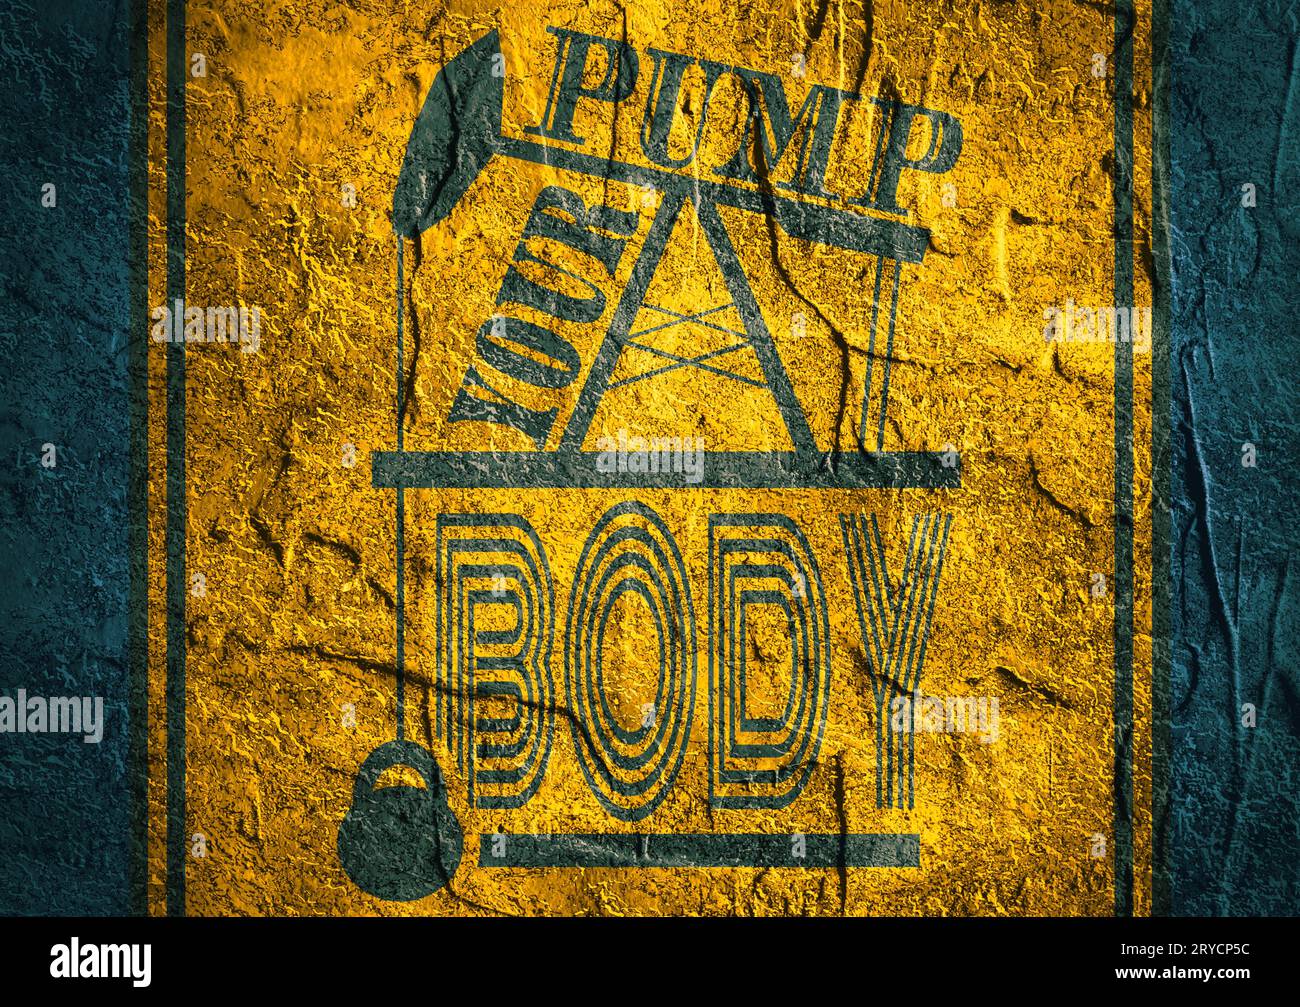 Pumpen Sie Ihren Körper. Motivation für Fitnessstudio und Fitness – Zitat. Stockfoto